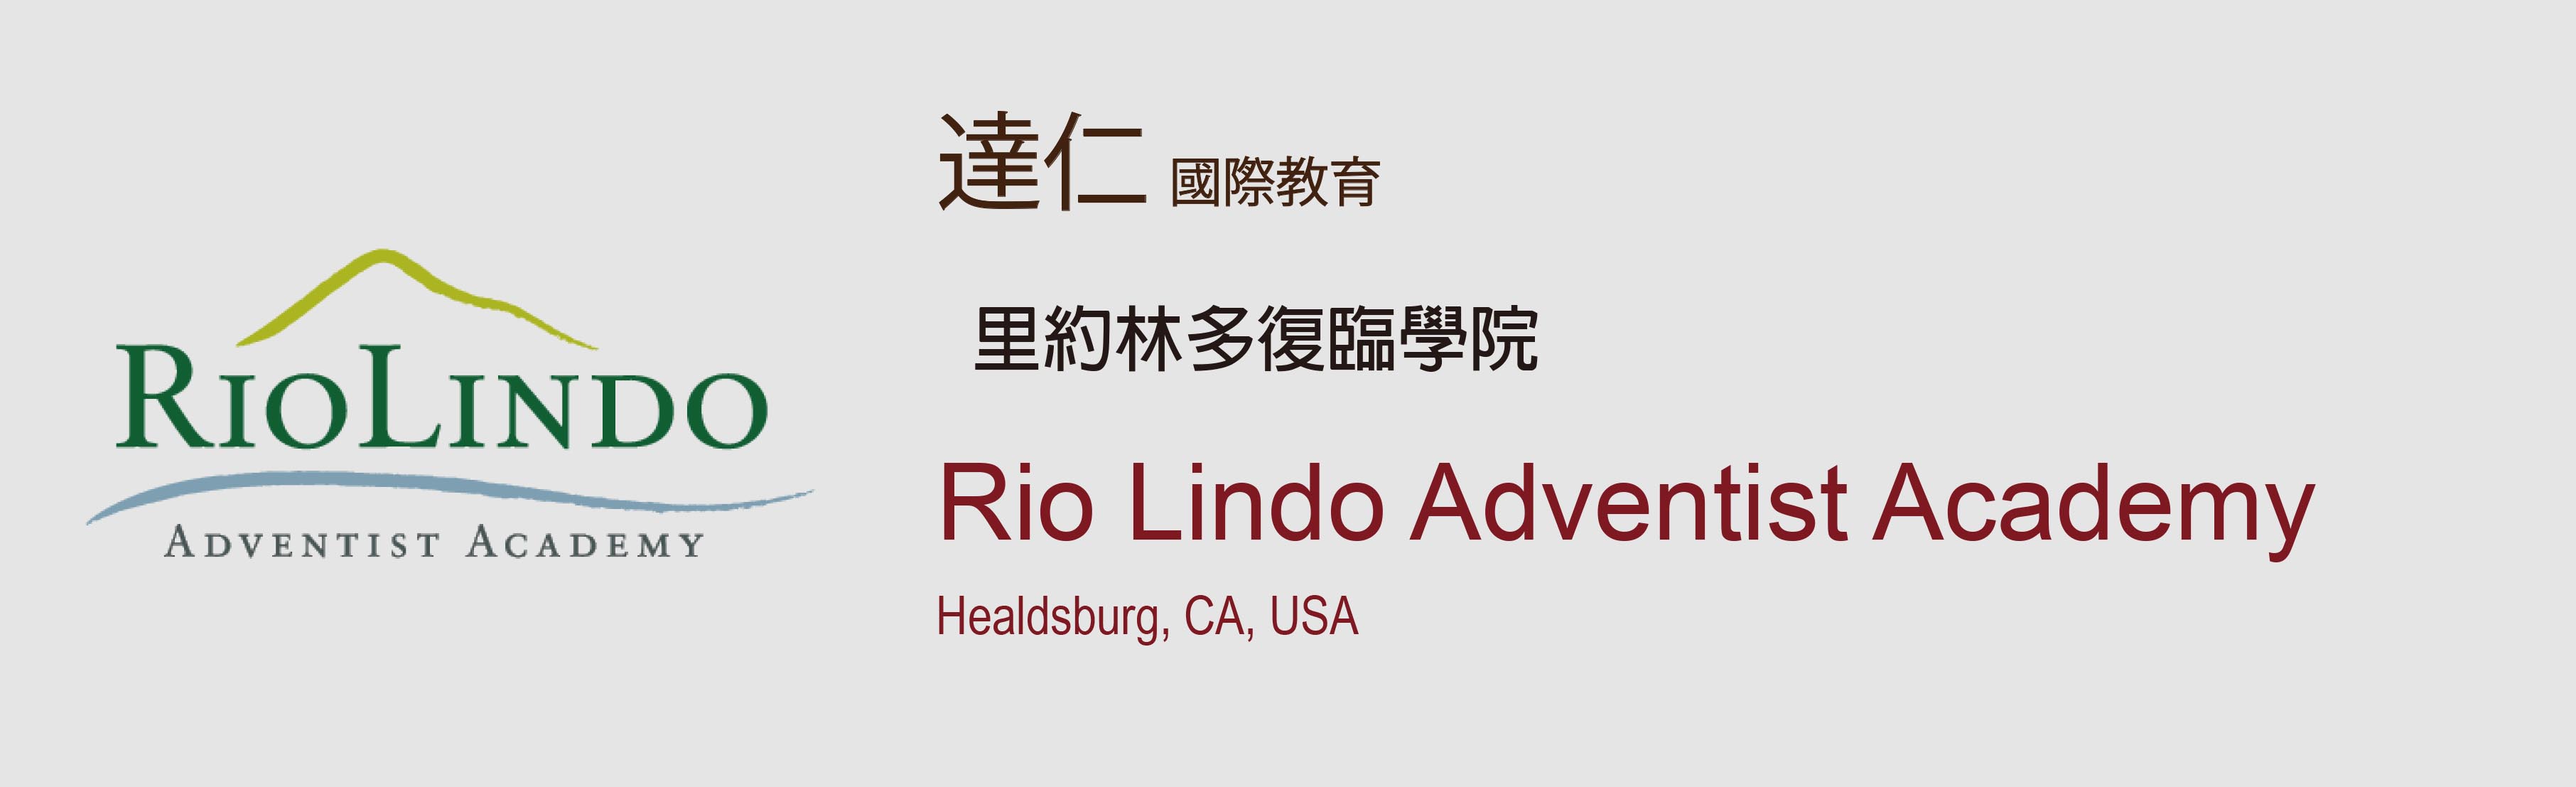 里約林多復臨學院 Rio Lindo Adventist Academy